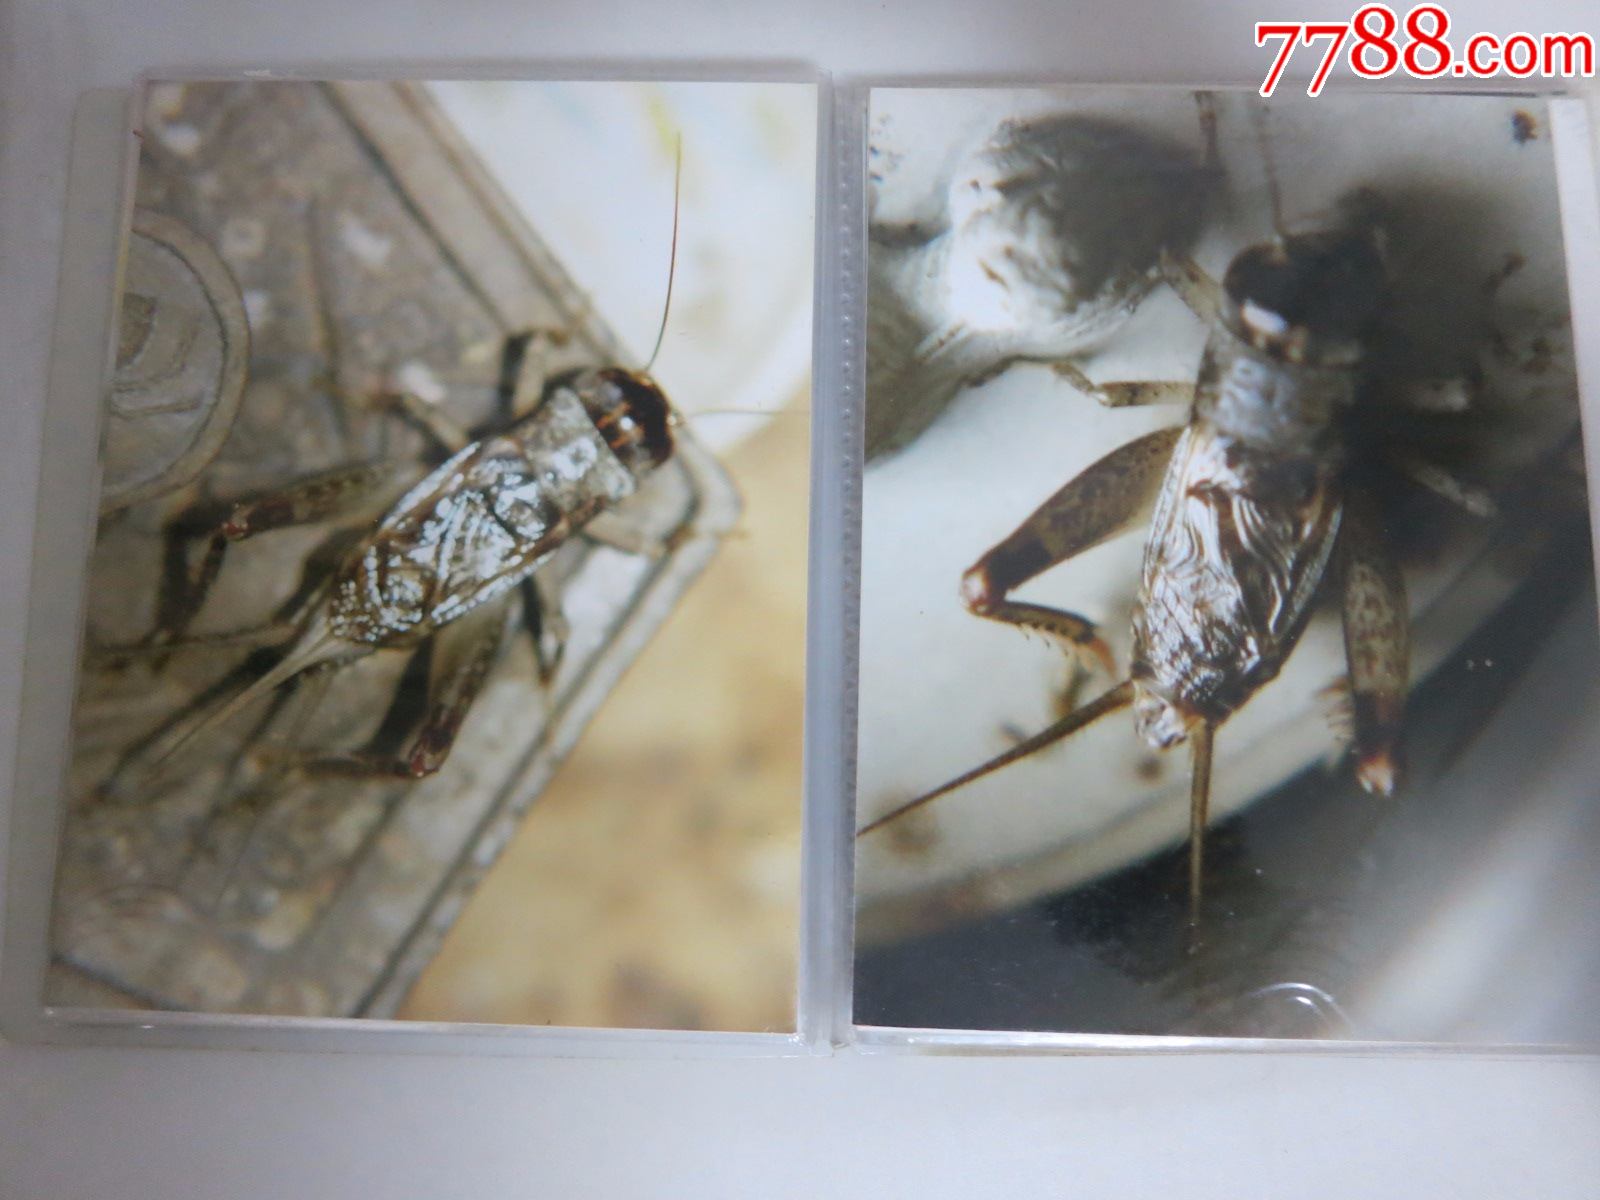 蟋蟀蛐蛐异虫照片一本,吴继传拍摄照原件,封皮作者所写《蚁码异虫》